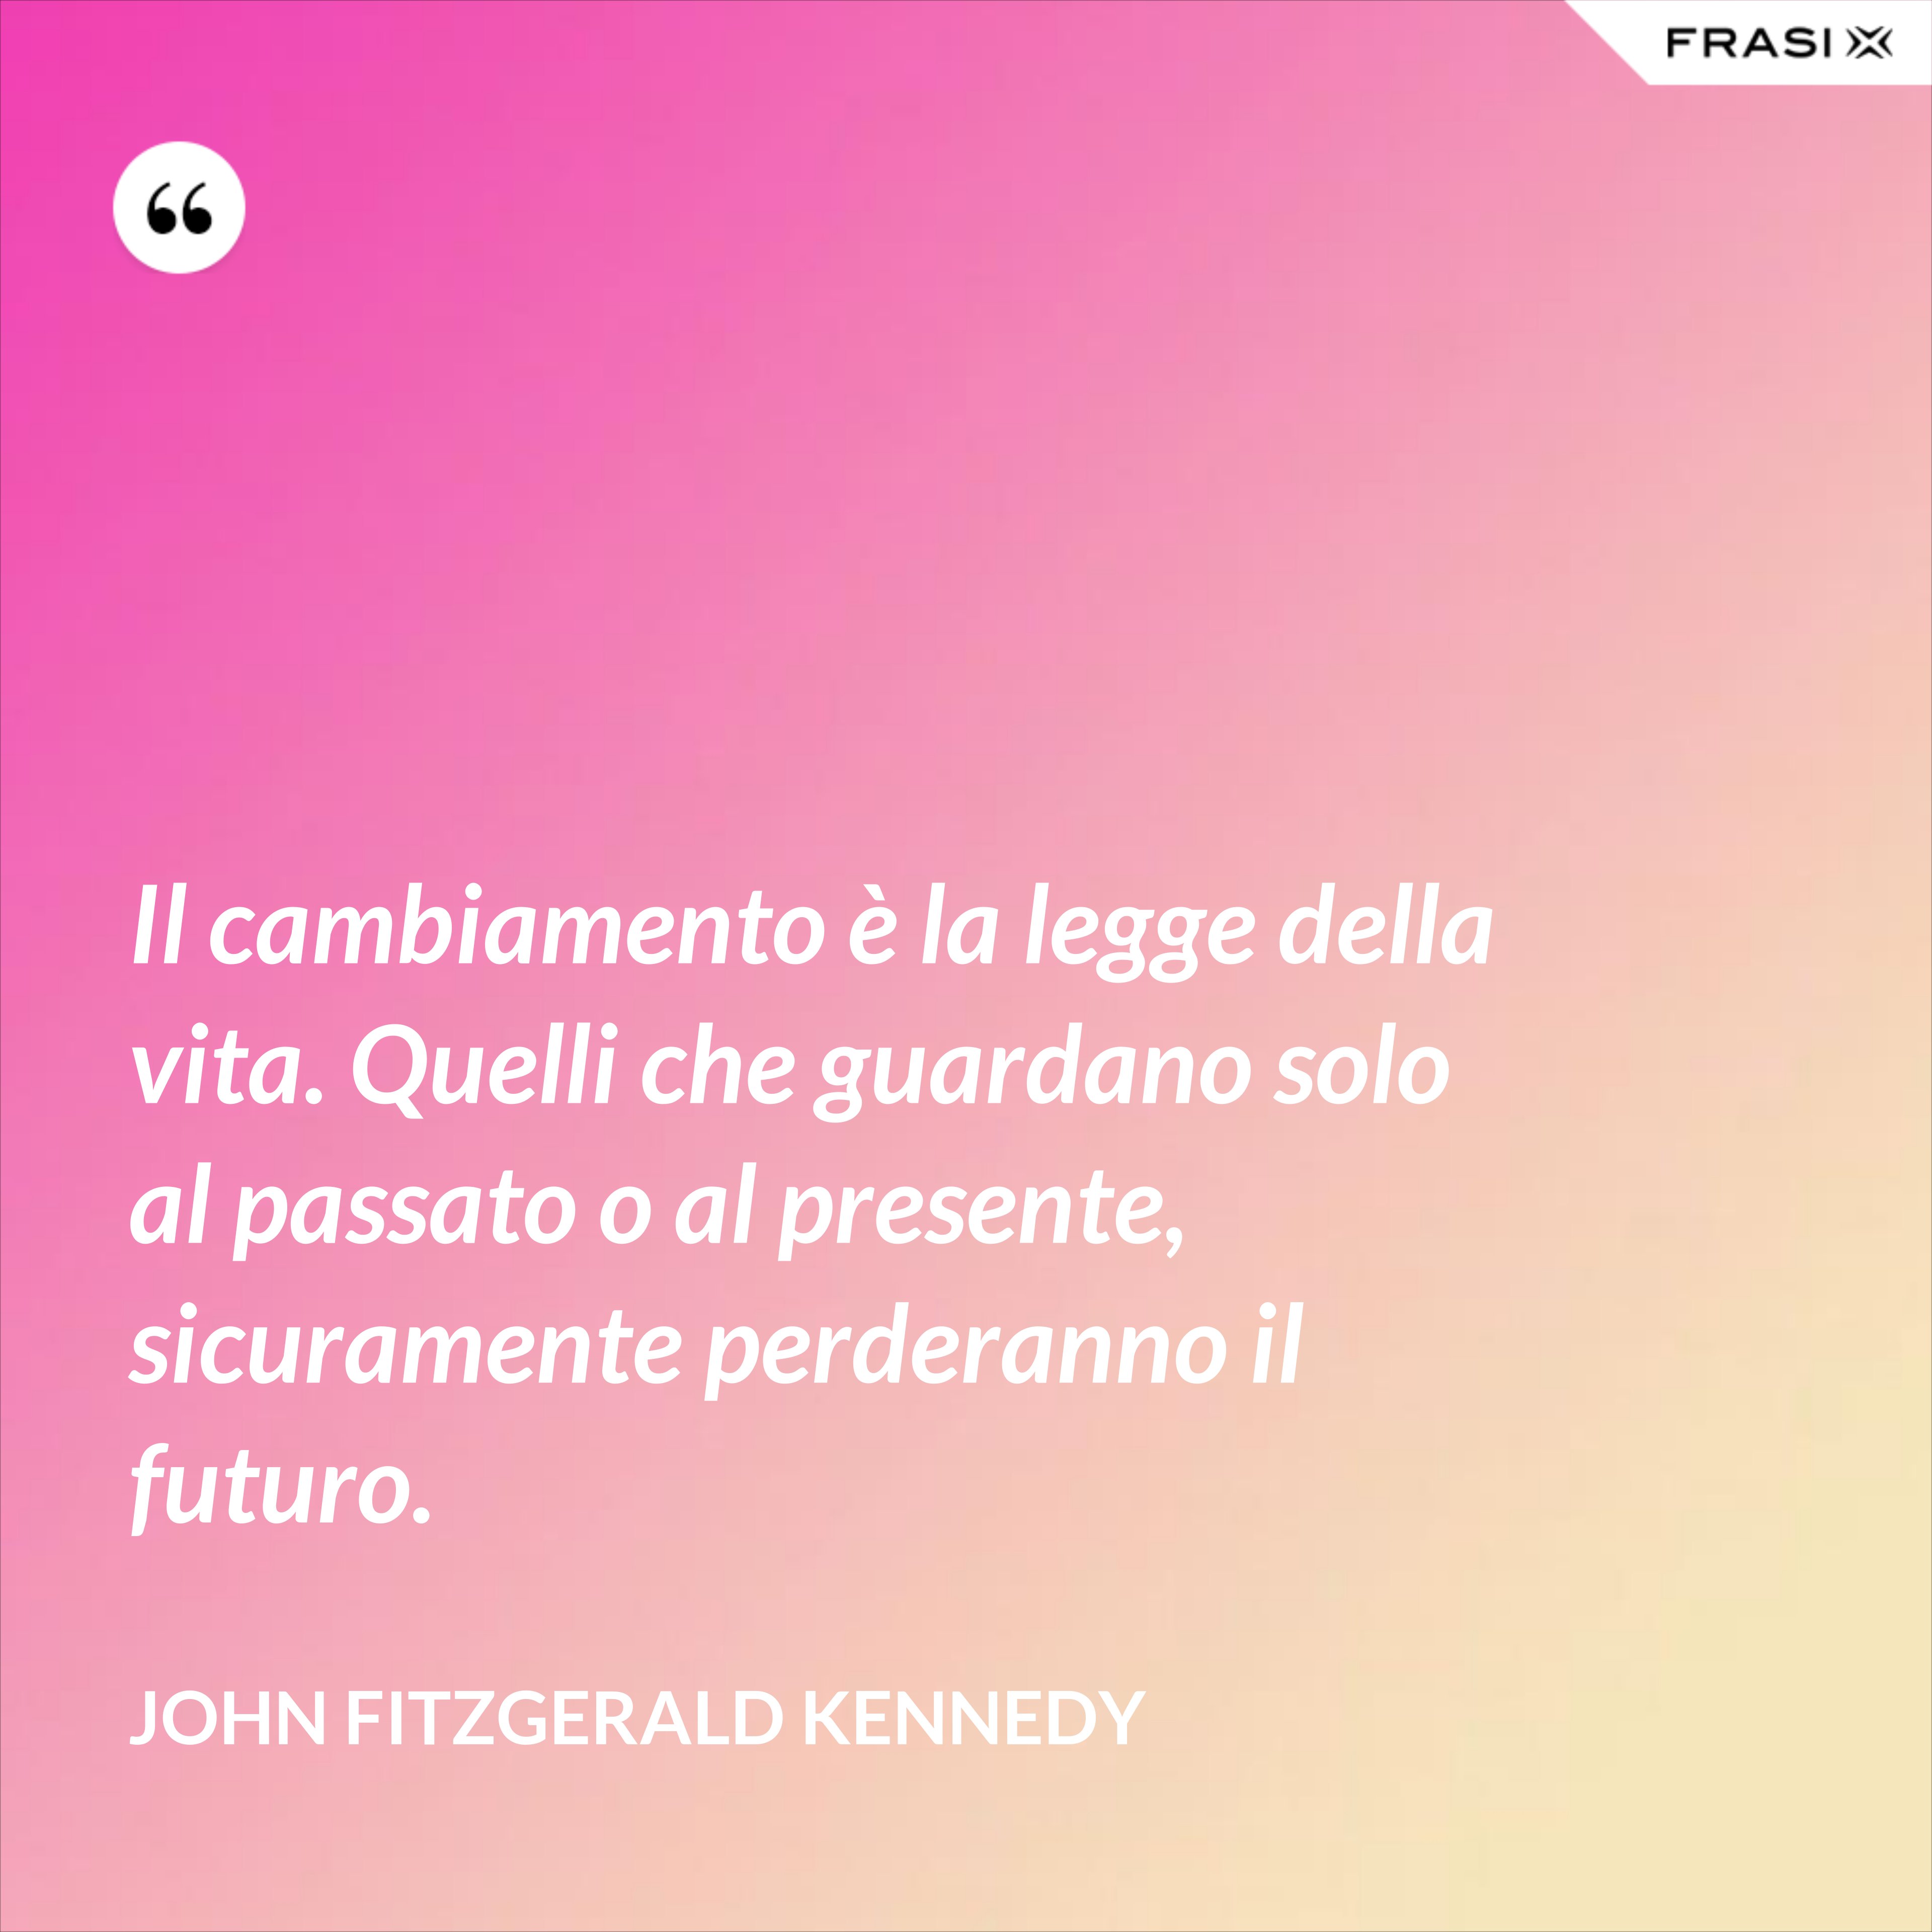 Il cambiamento è la legge della vita. Quelli che guardano solo al passato o al presente, sicuramente perderanno il futuro. - John Fitzgerald Kennedy